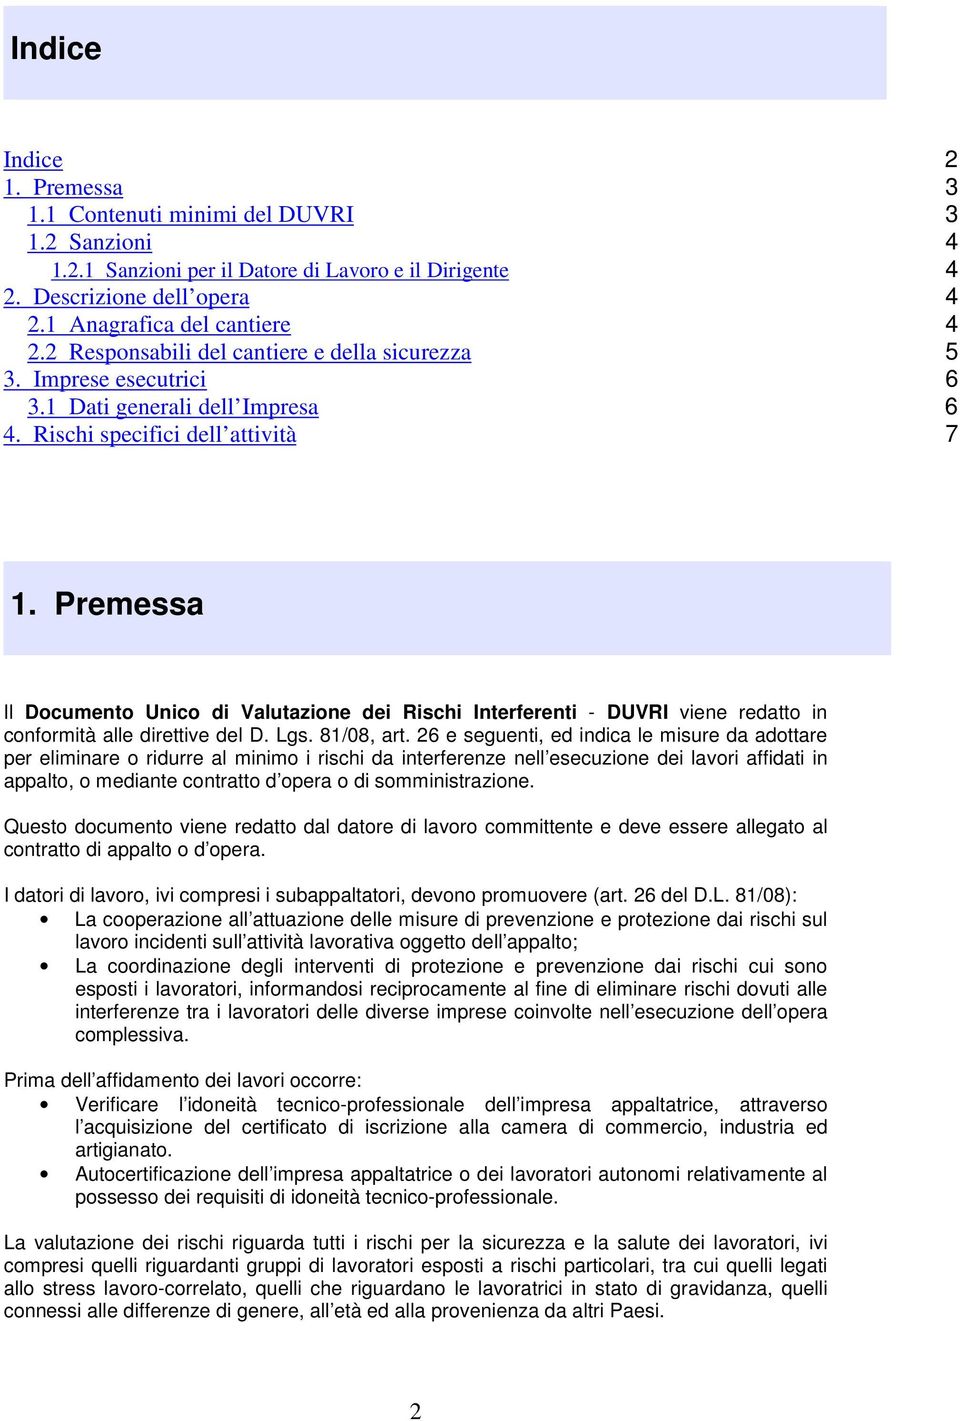 Premessa Il Documento Unico di Valutazione dei Rischi Interferenti - DUVRI viene redatto in conformità alle direttive del D. Lgs. 81/08, art.